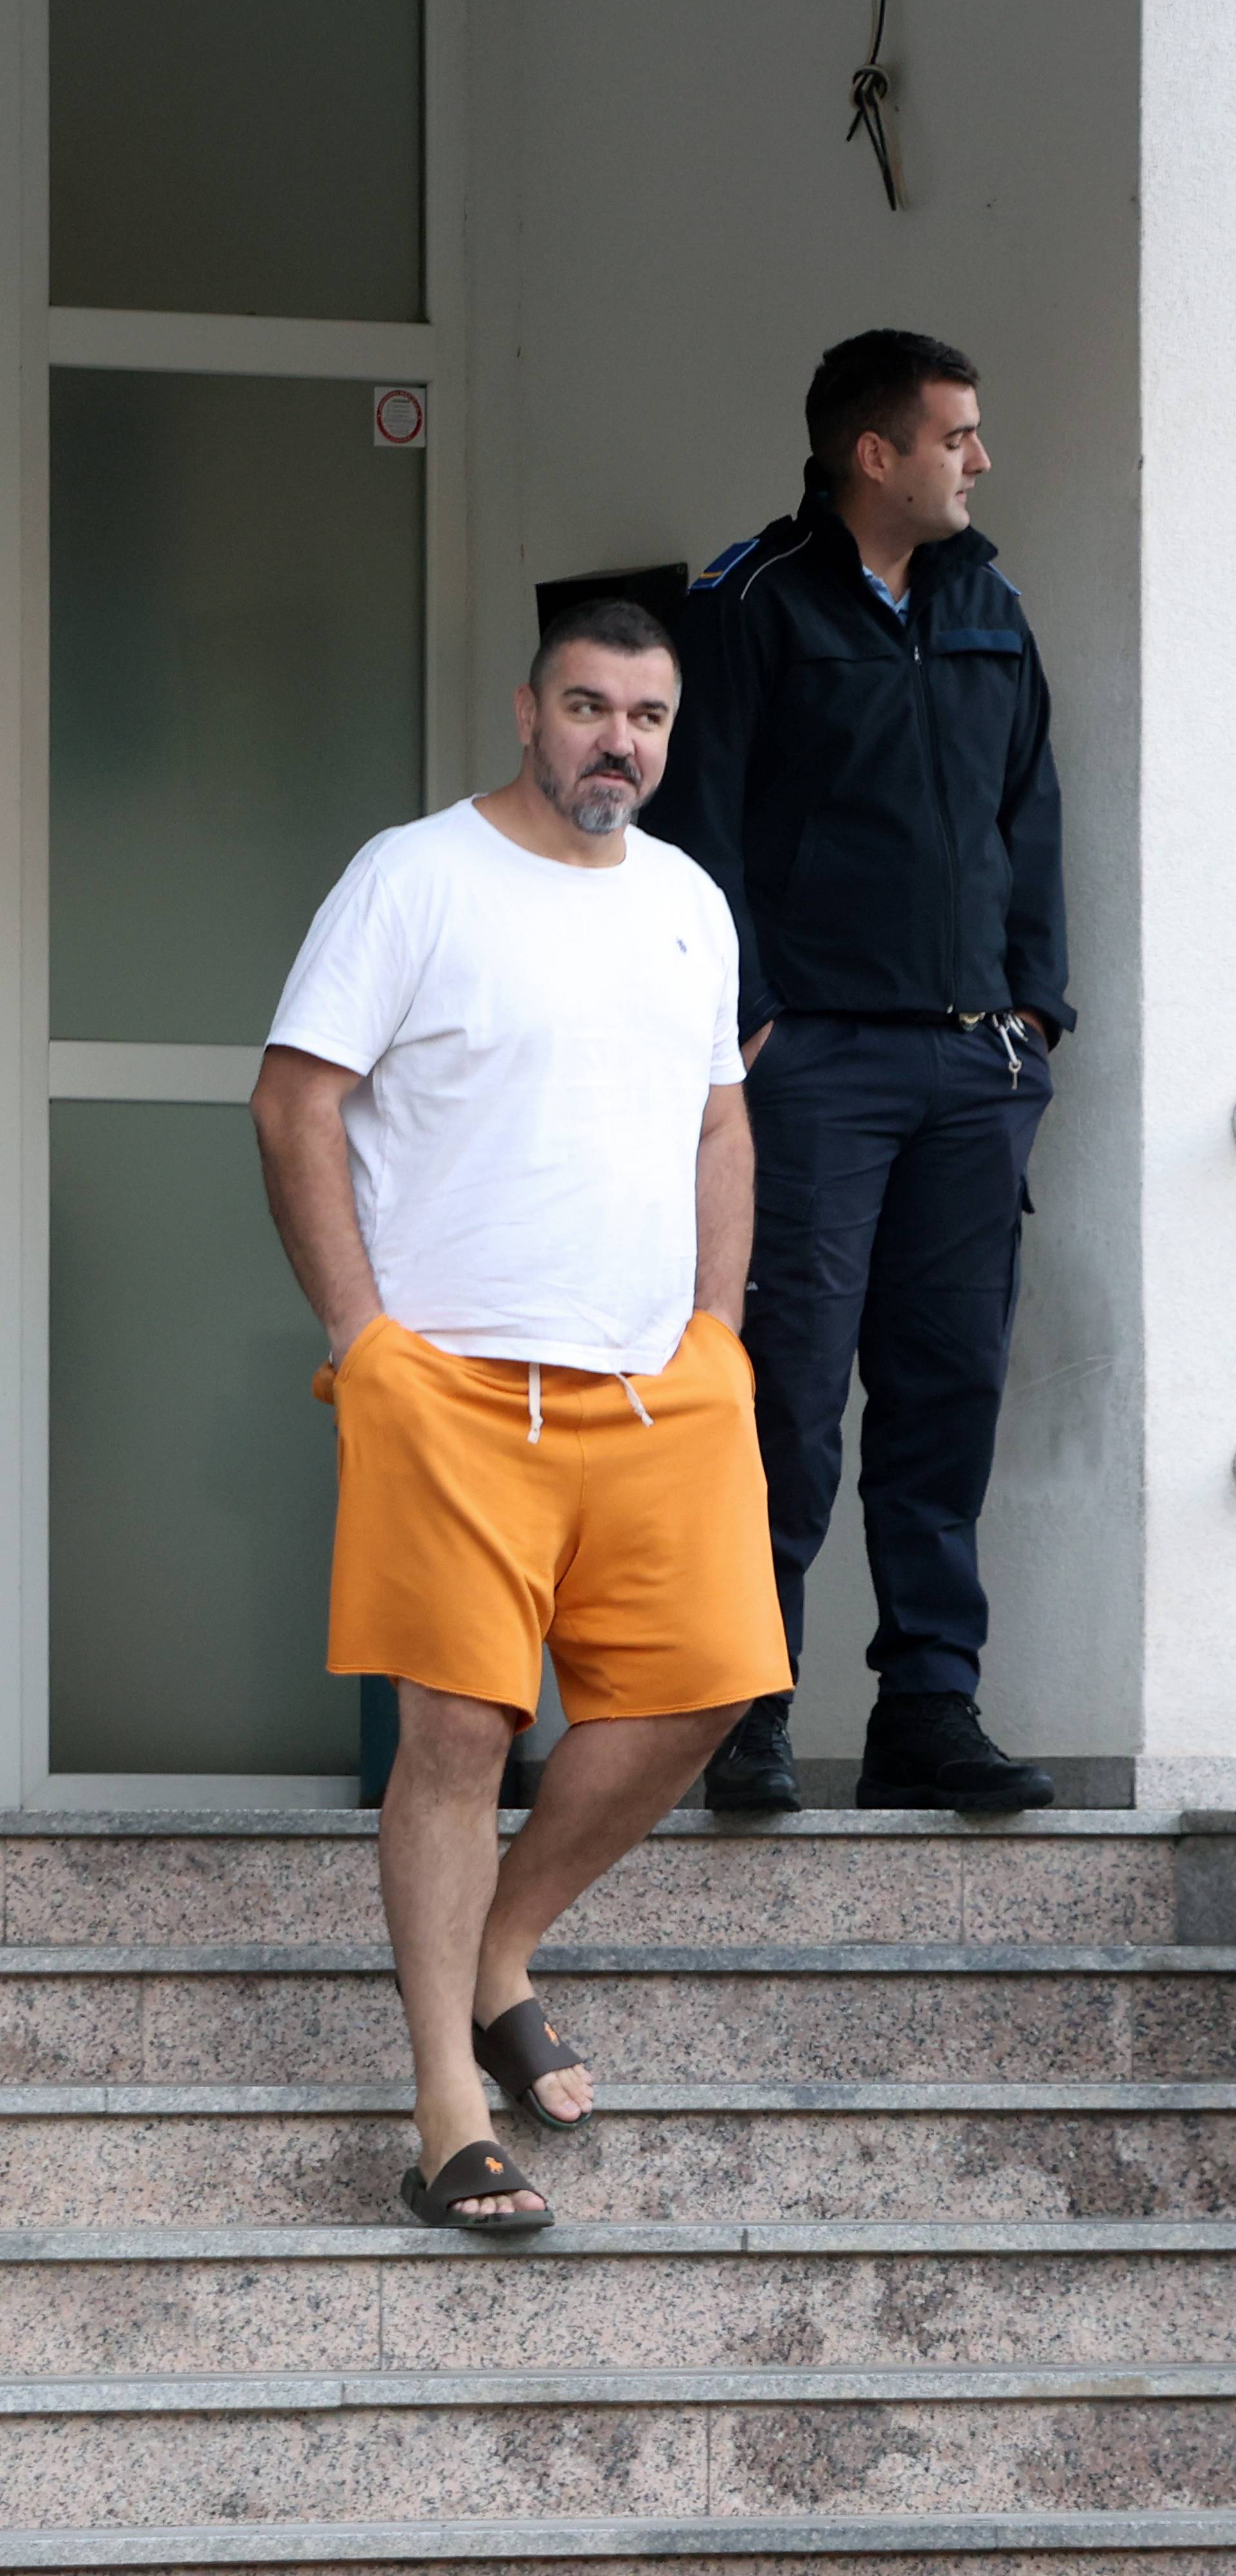 Denis Buntić javio se u policijski postaju u Ljubuškom 